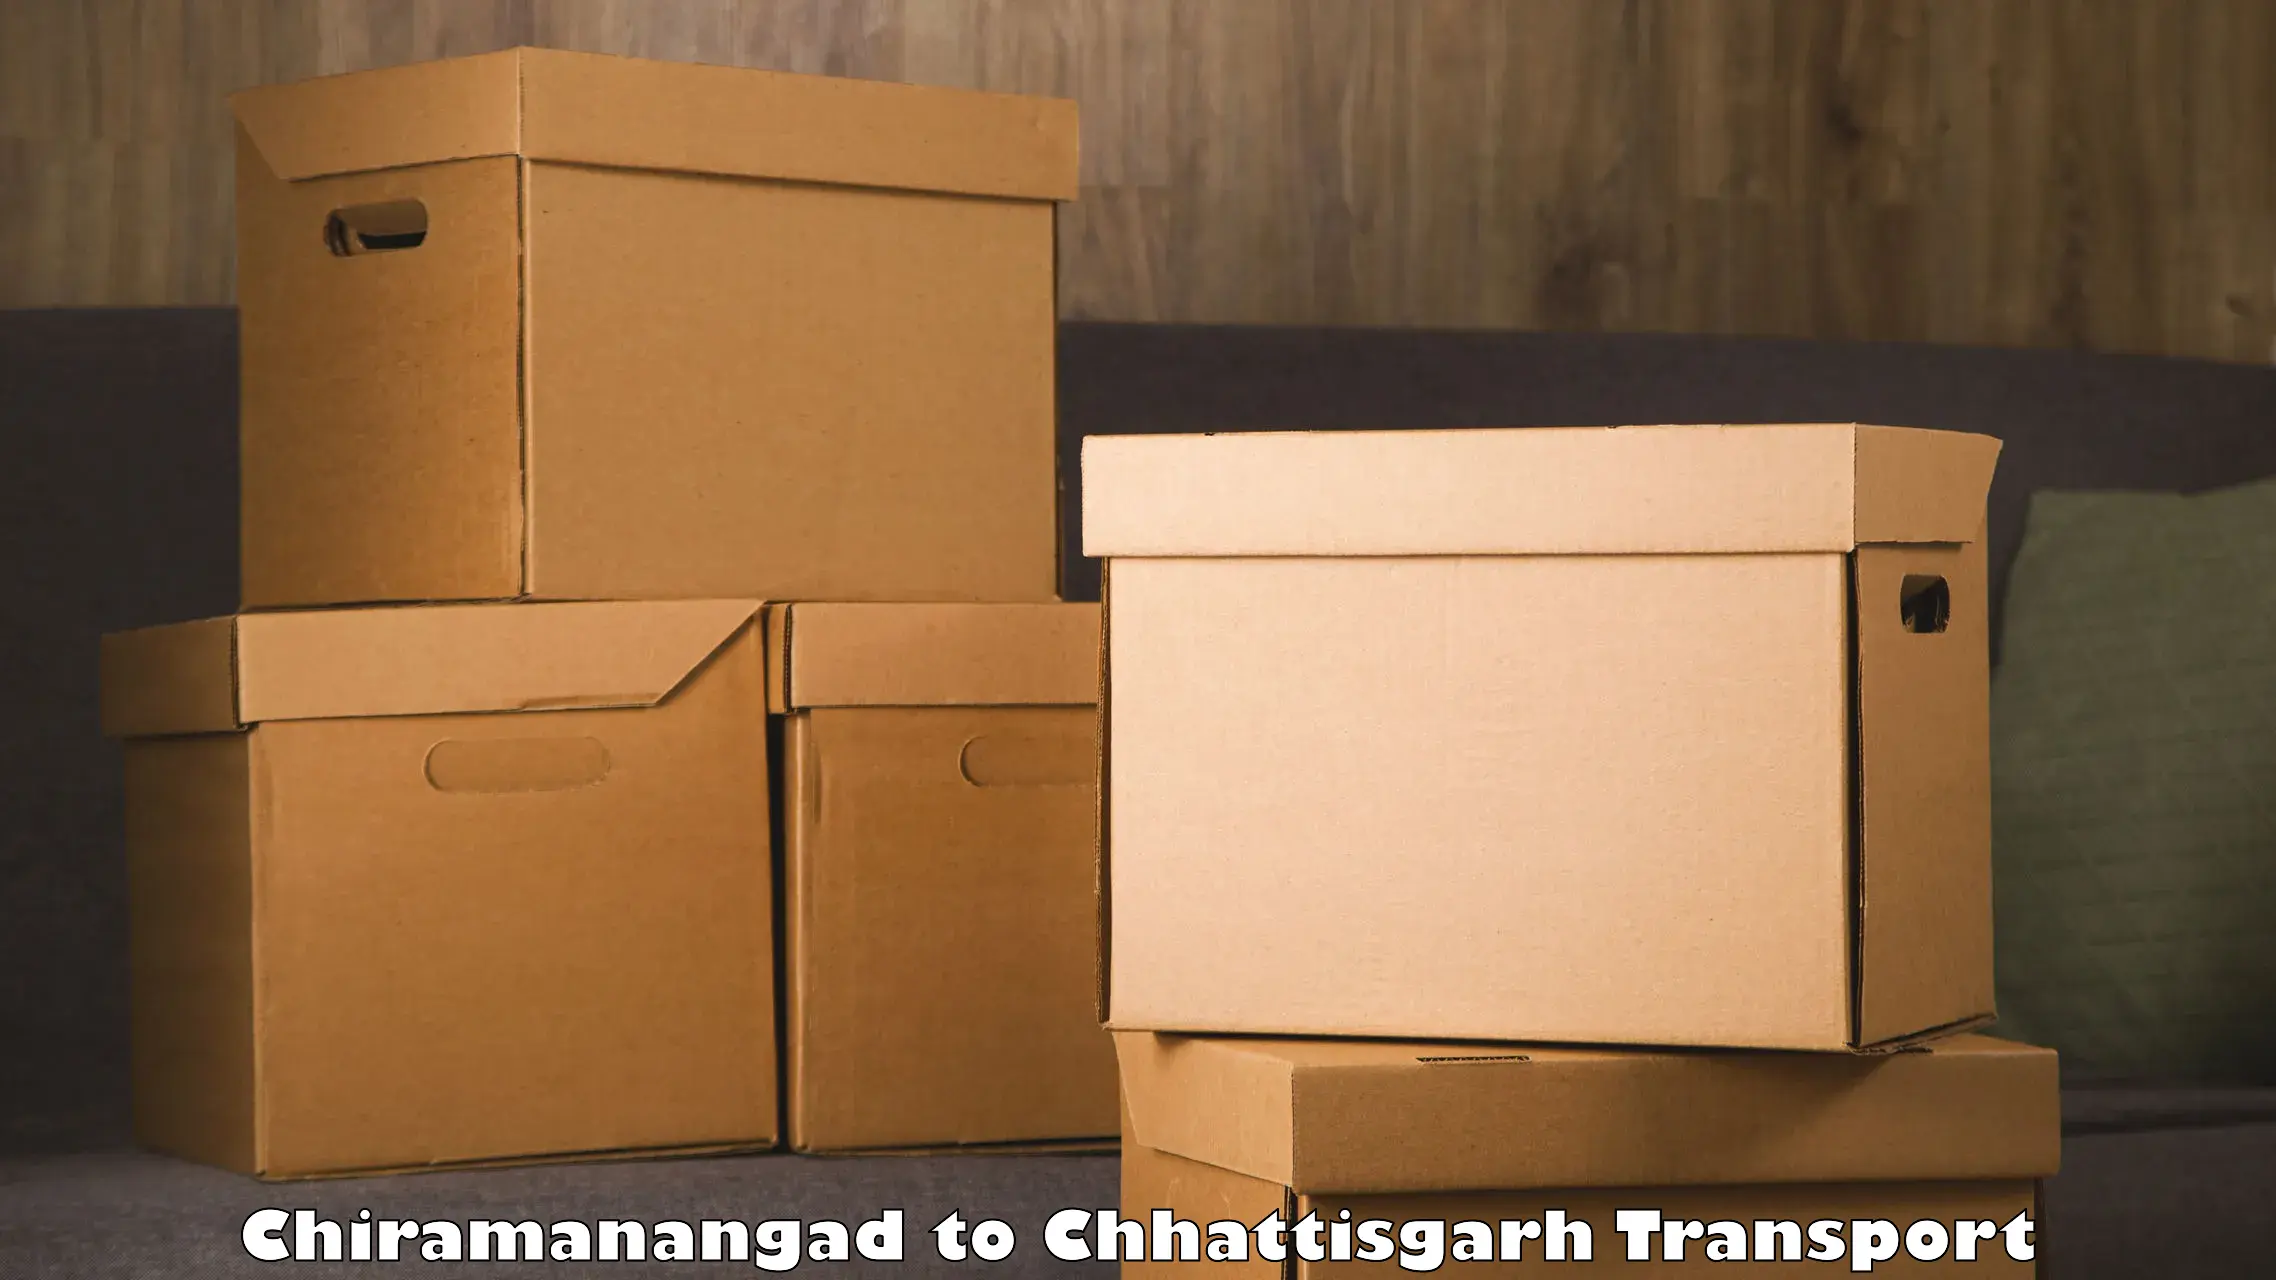 Truck transport companies in India Chiramanangad to Bhilai